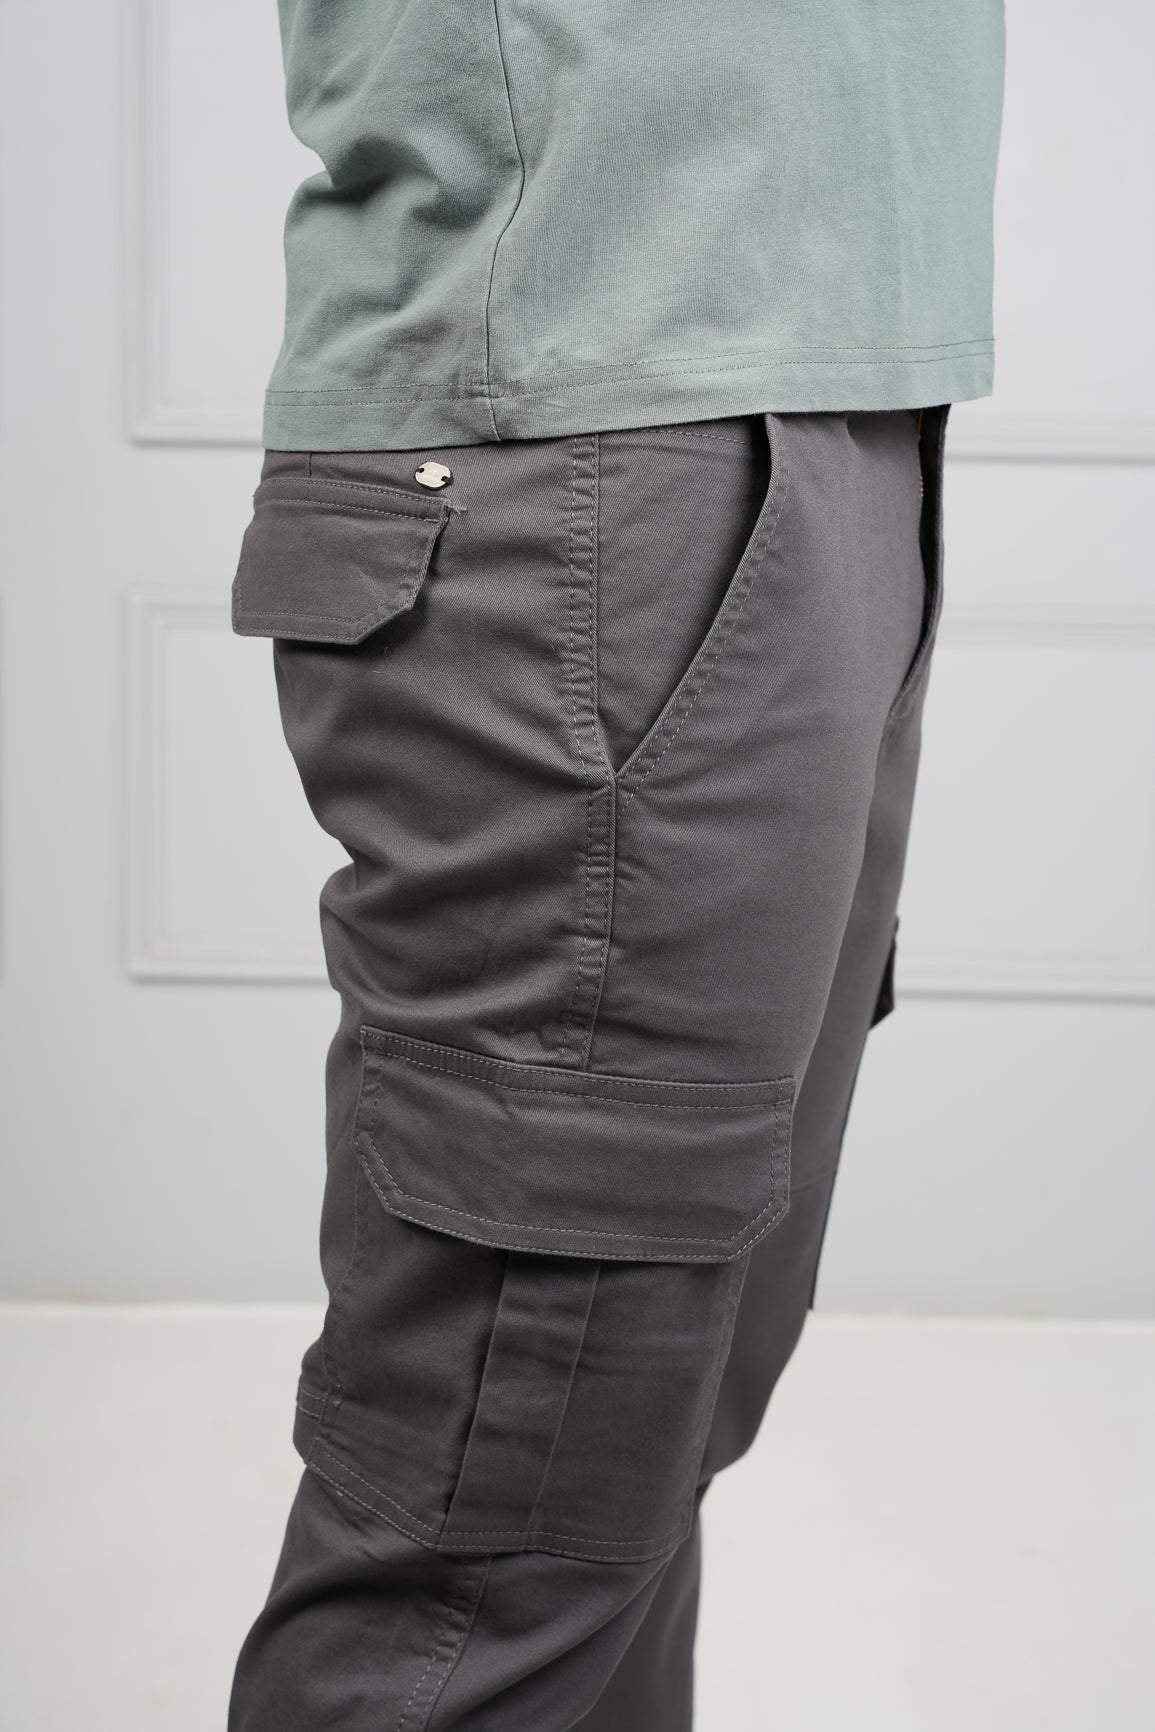 Essentials Cargo Pants - Grey